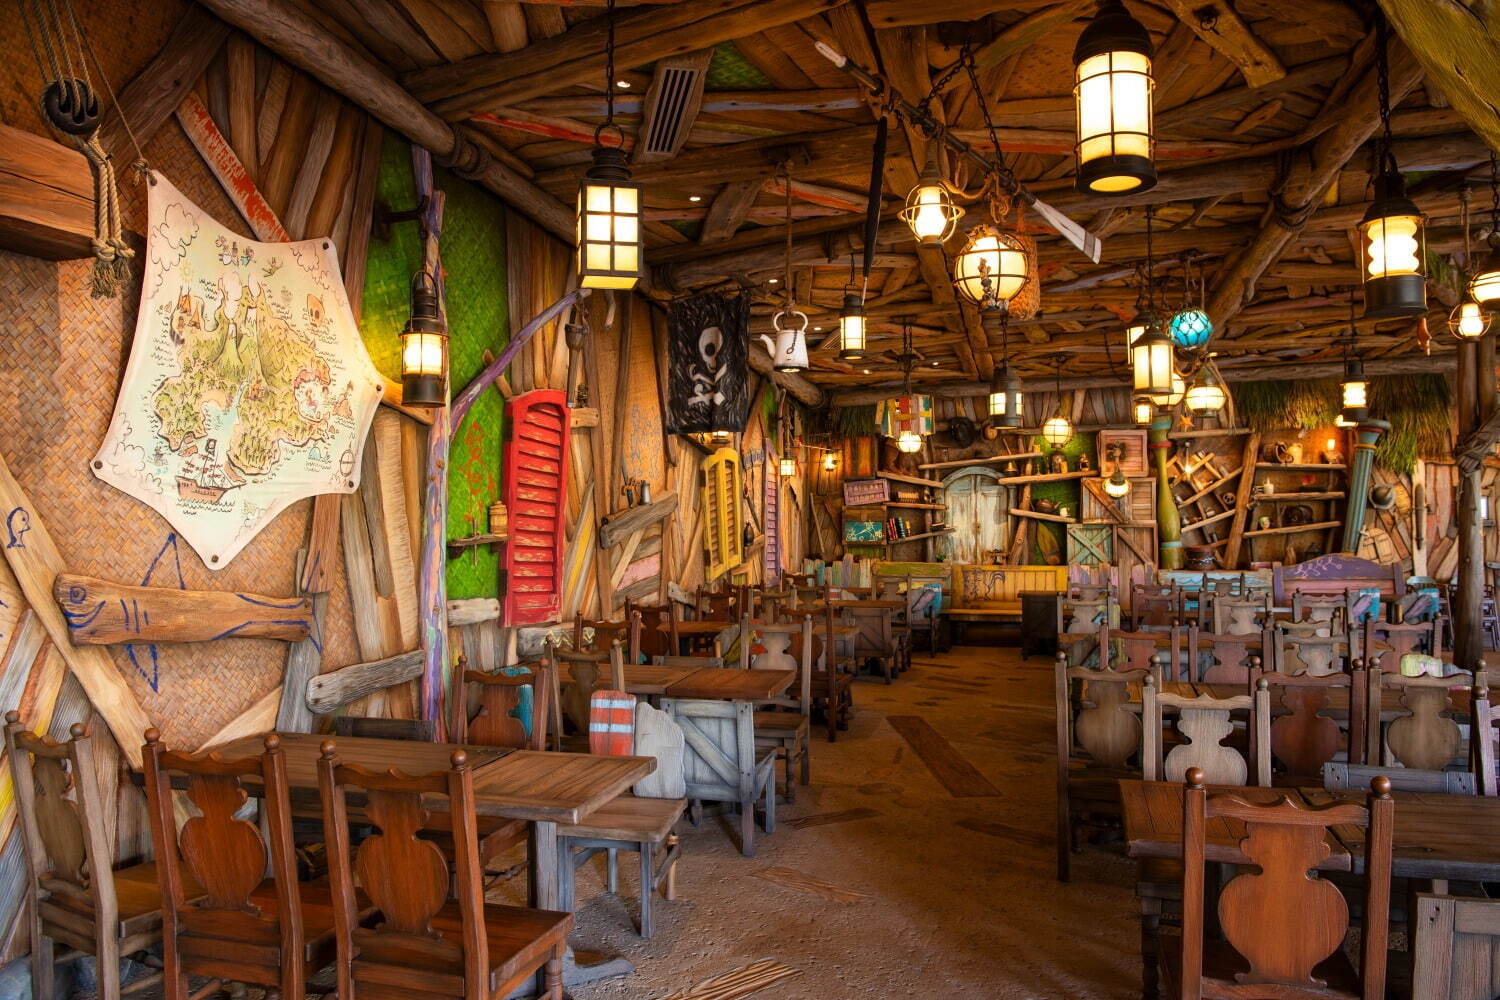 Dining at Peter Pan's Never Land - Tokyo DisneySea